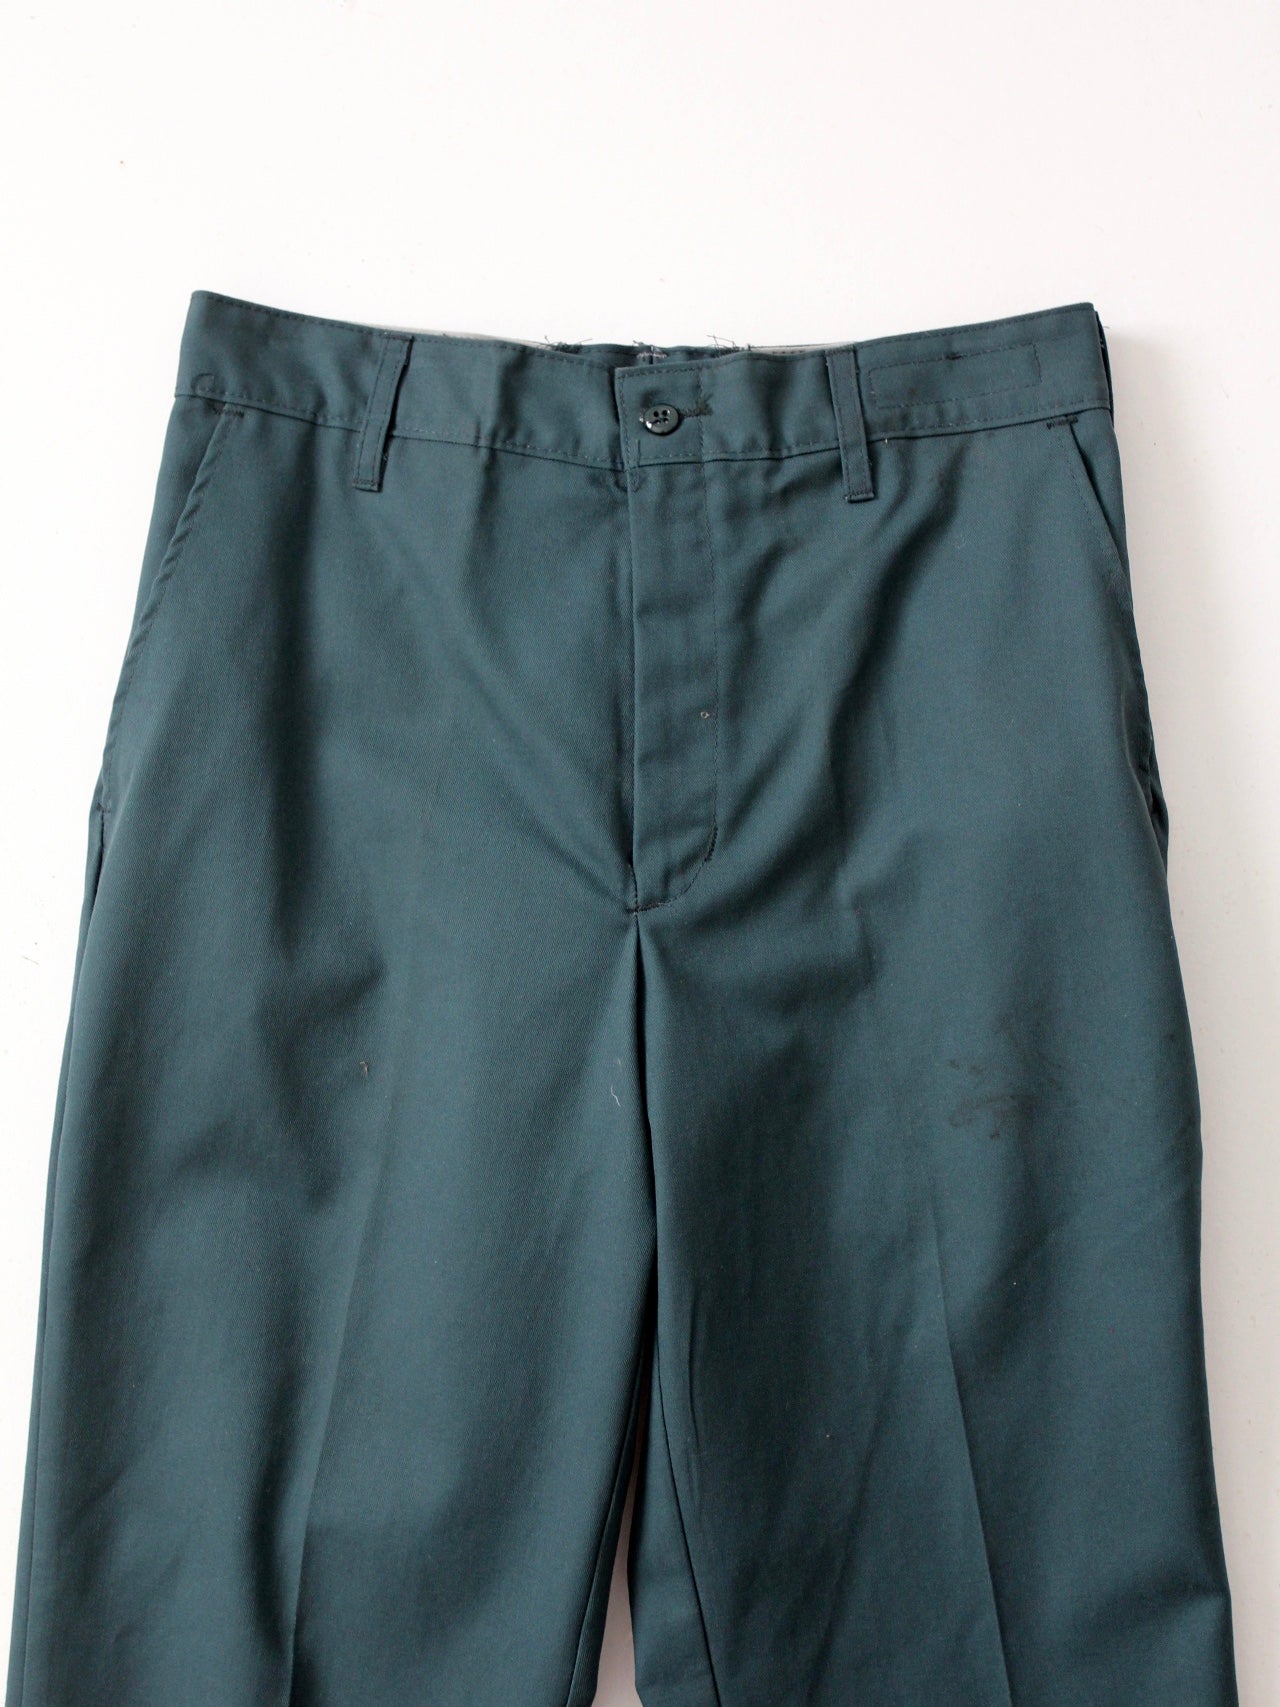 vintage work pants, 31 x 30 – 86 Vintage